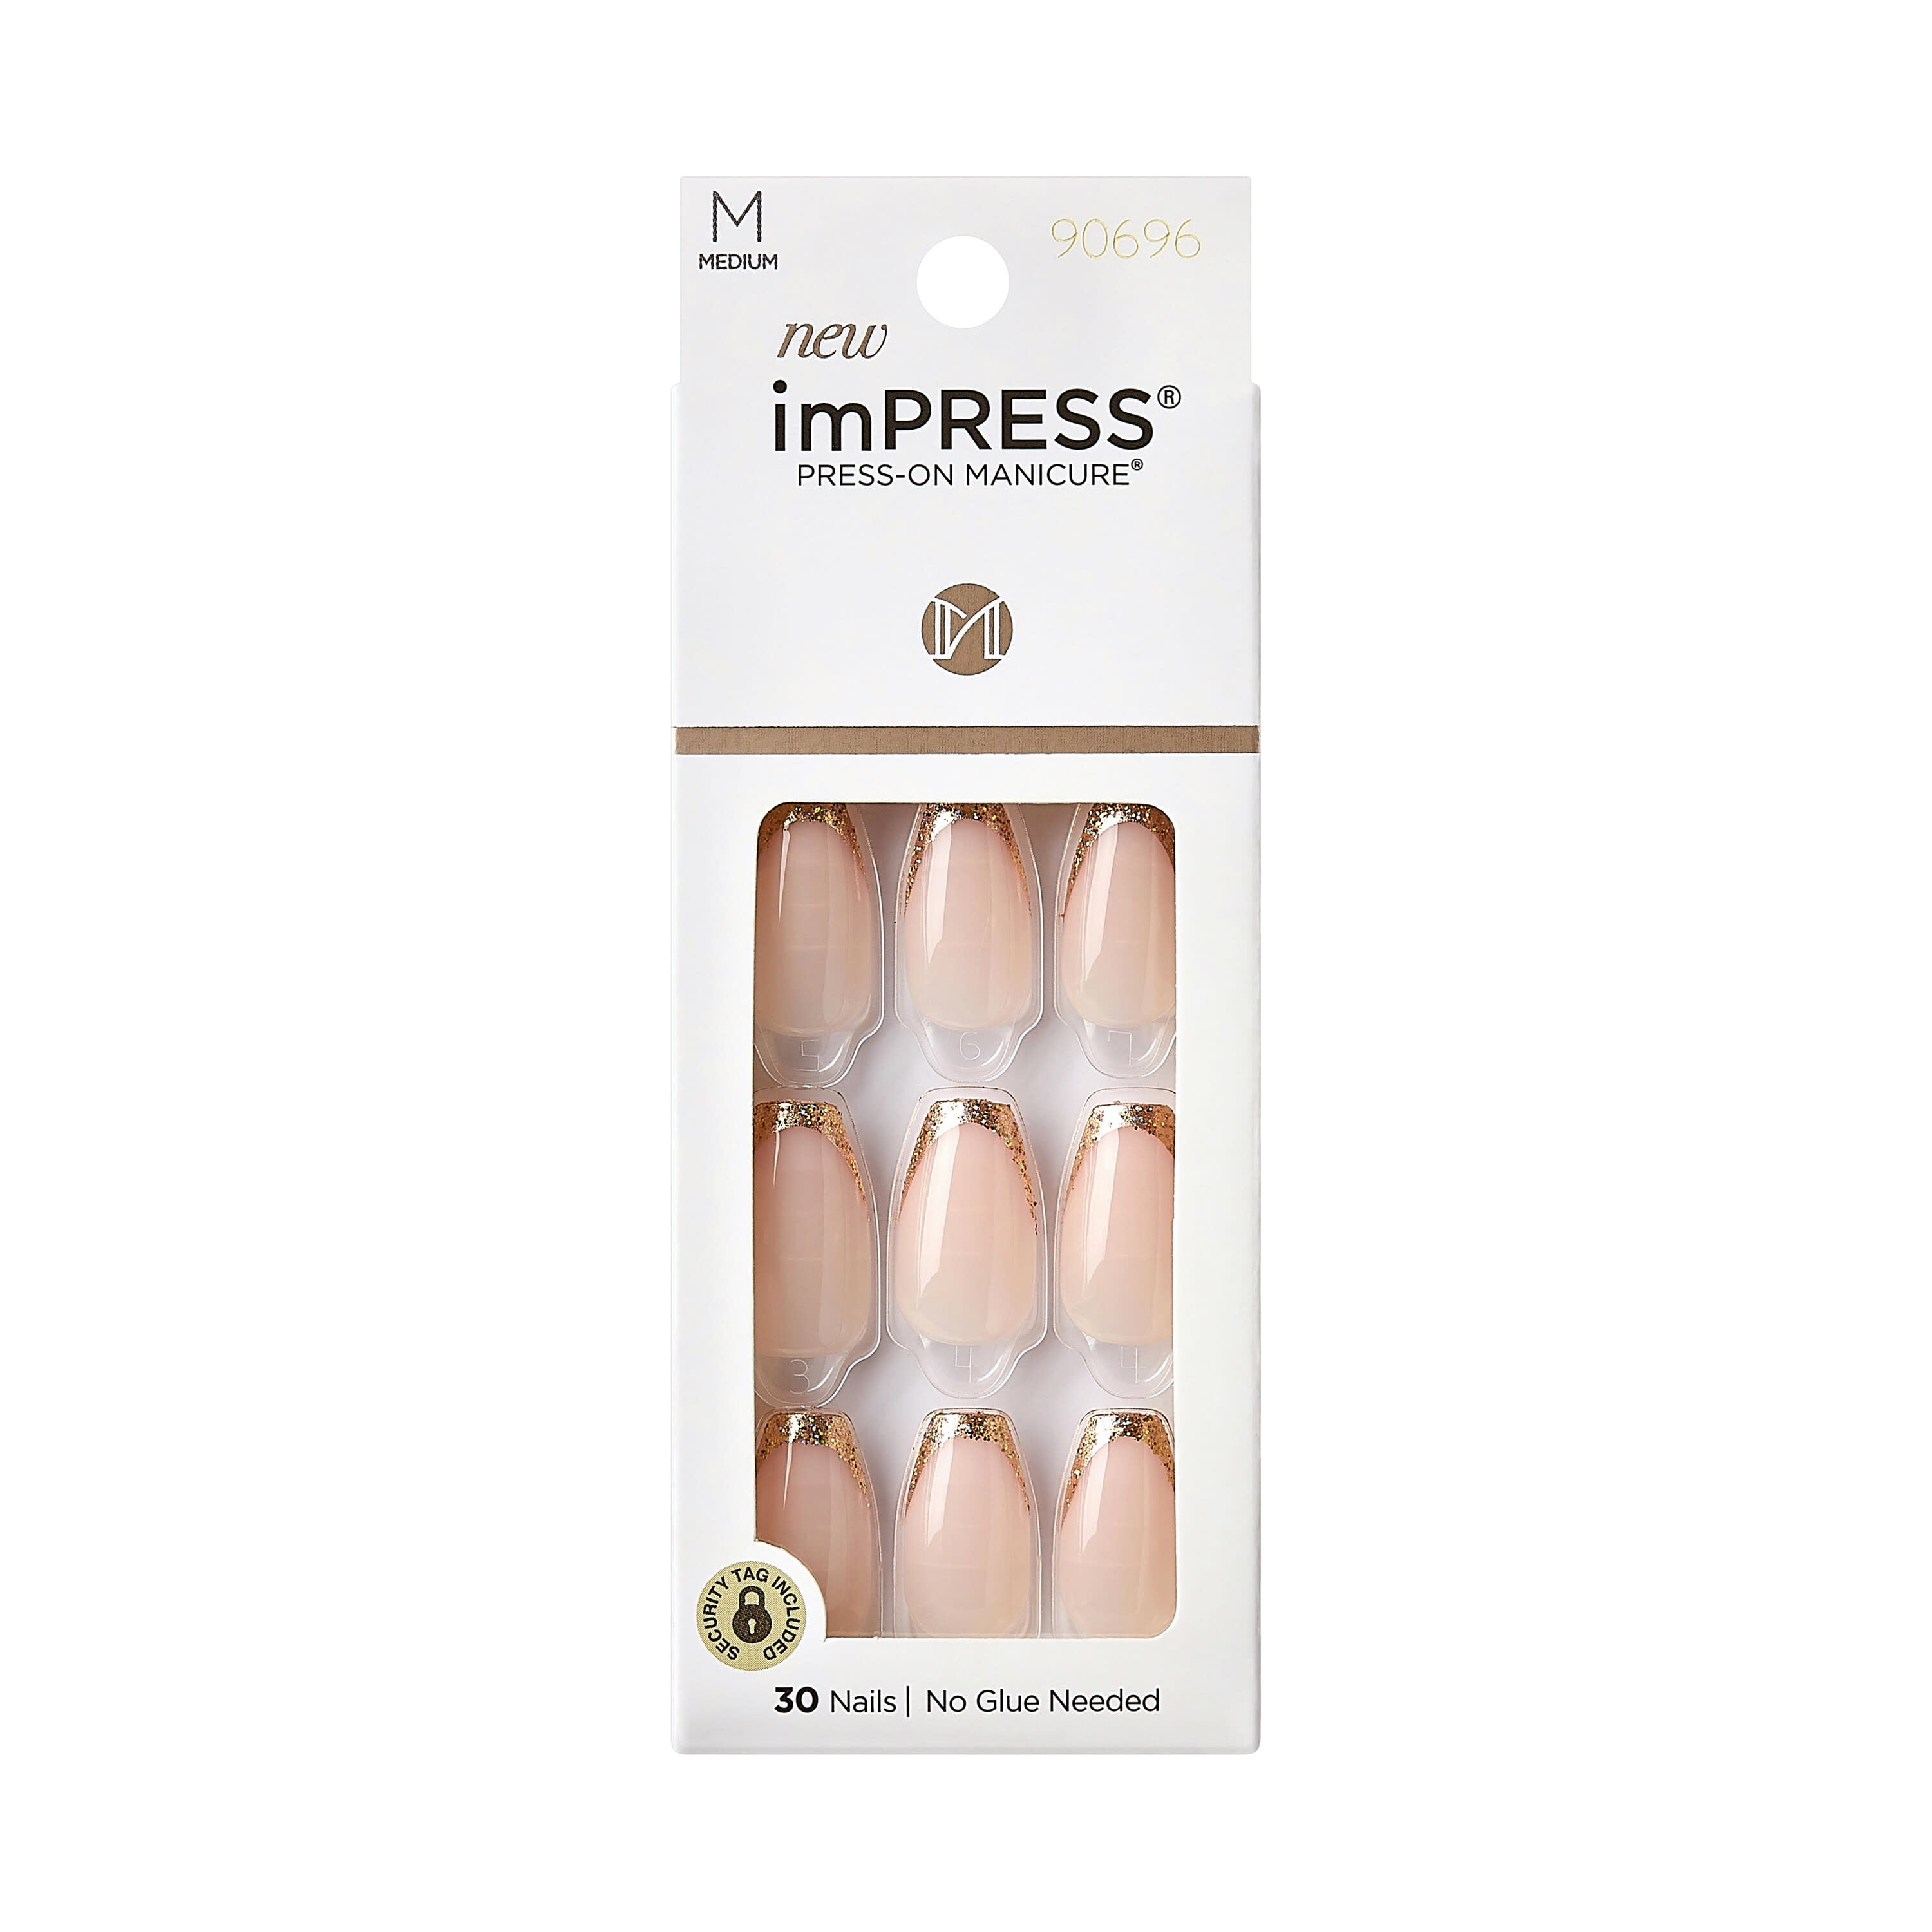 KISS imPRESS Press-on Manicure, Purple, Medium, Almond, 'Climb Up', 33 Ct.  - Walmart.com